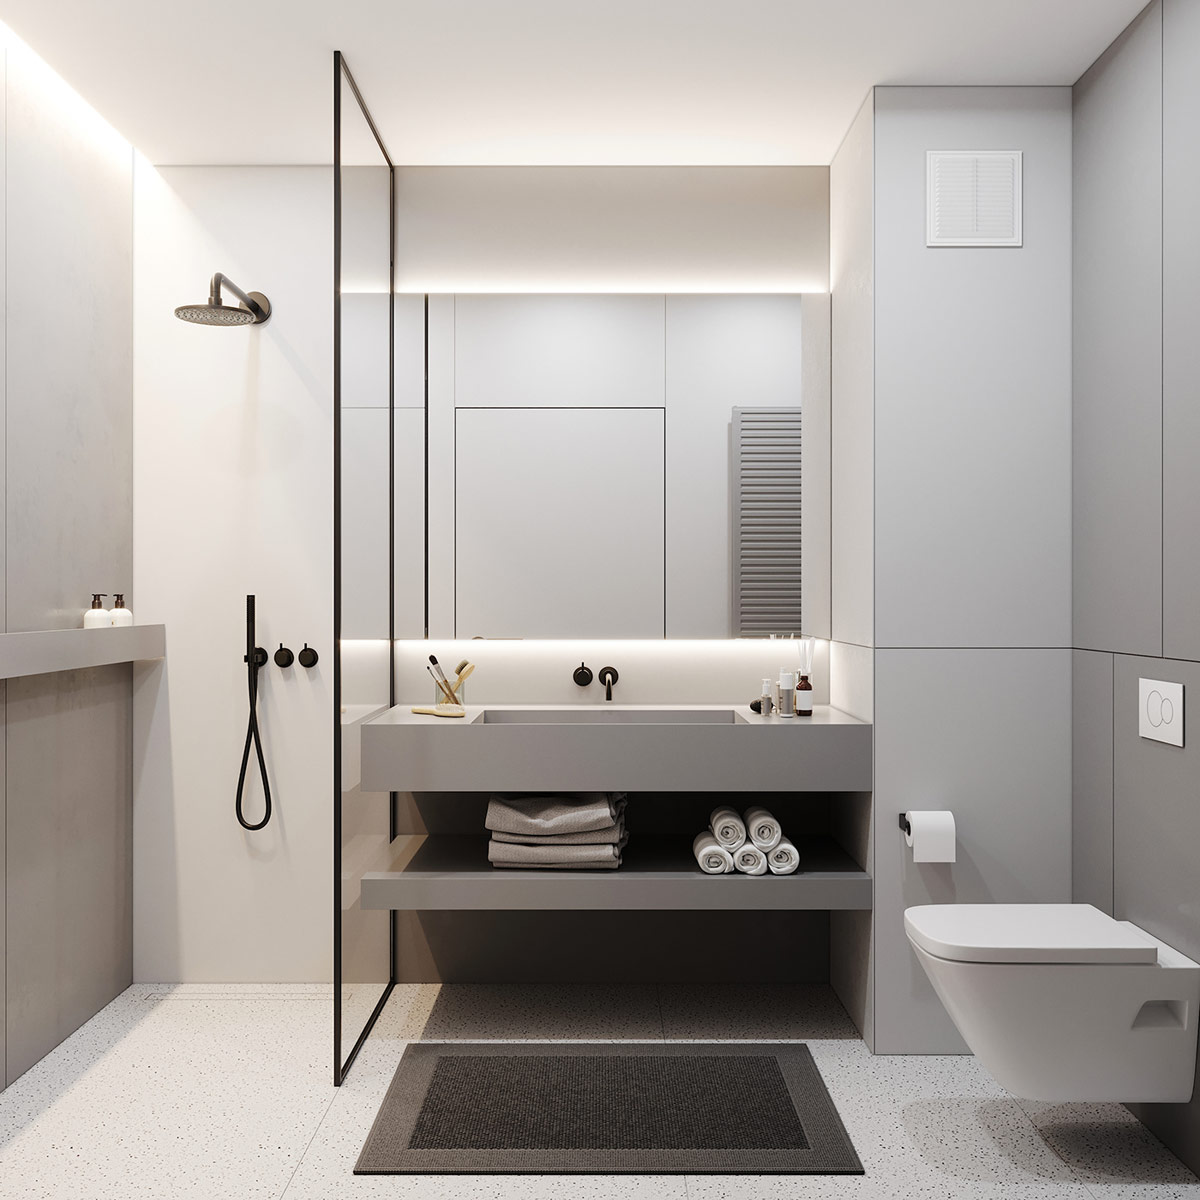 Phòng tắm tối giản được trang trí với tông màu trắng sáng chủ đạo kết hợp cùng gương kính tạo ảo giác về một không gian rộng thoáng hơn so với diện tích thực tế.